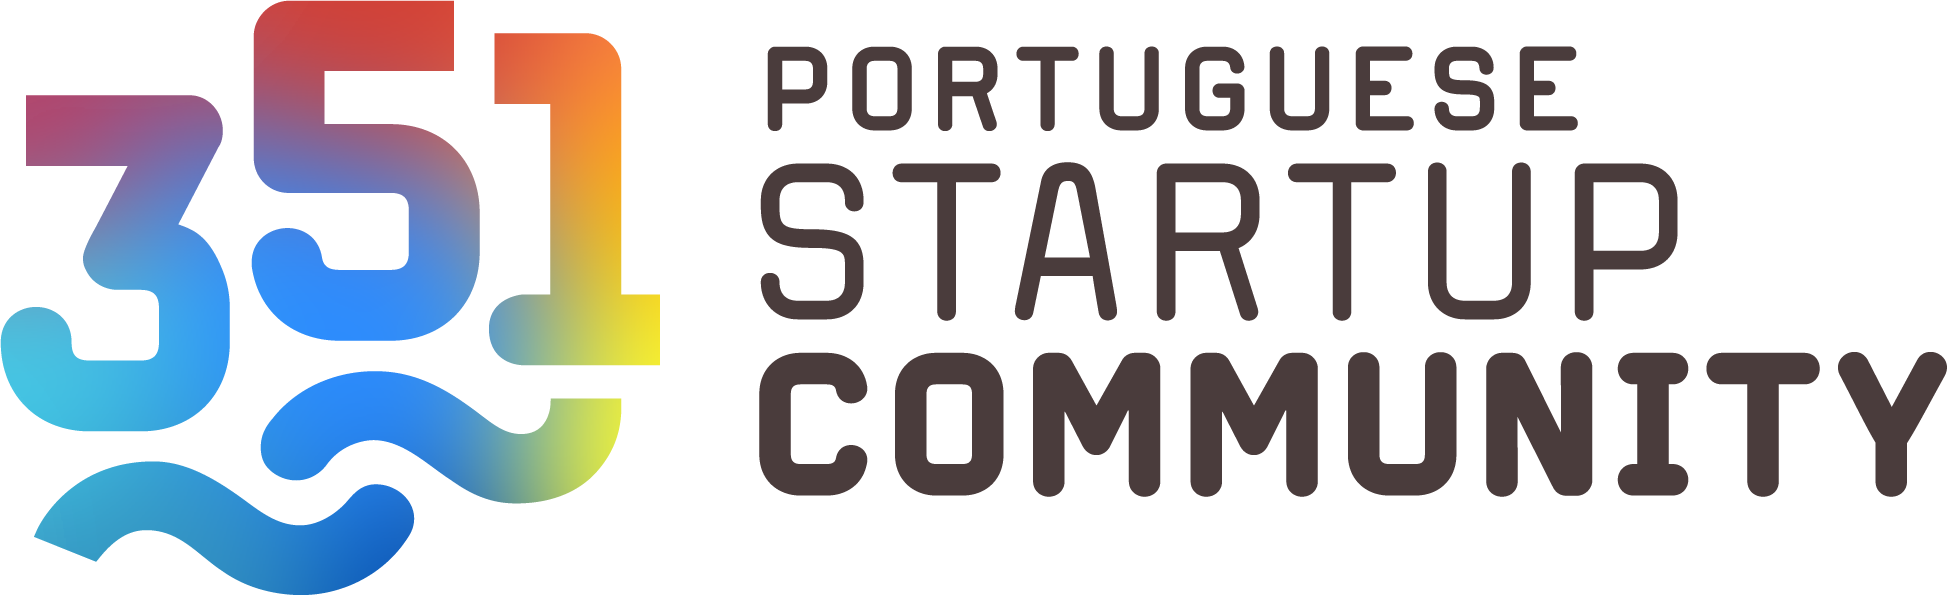 351 community logo